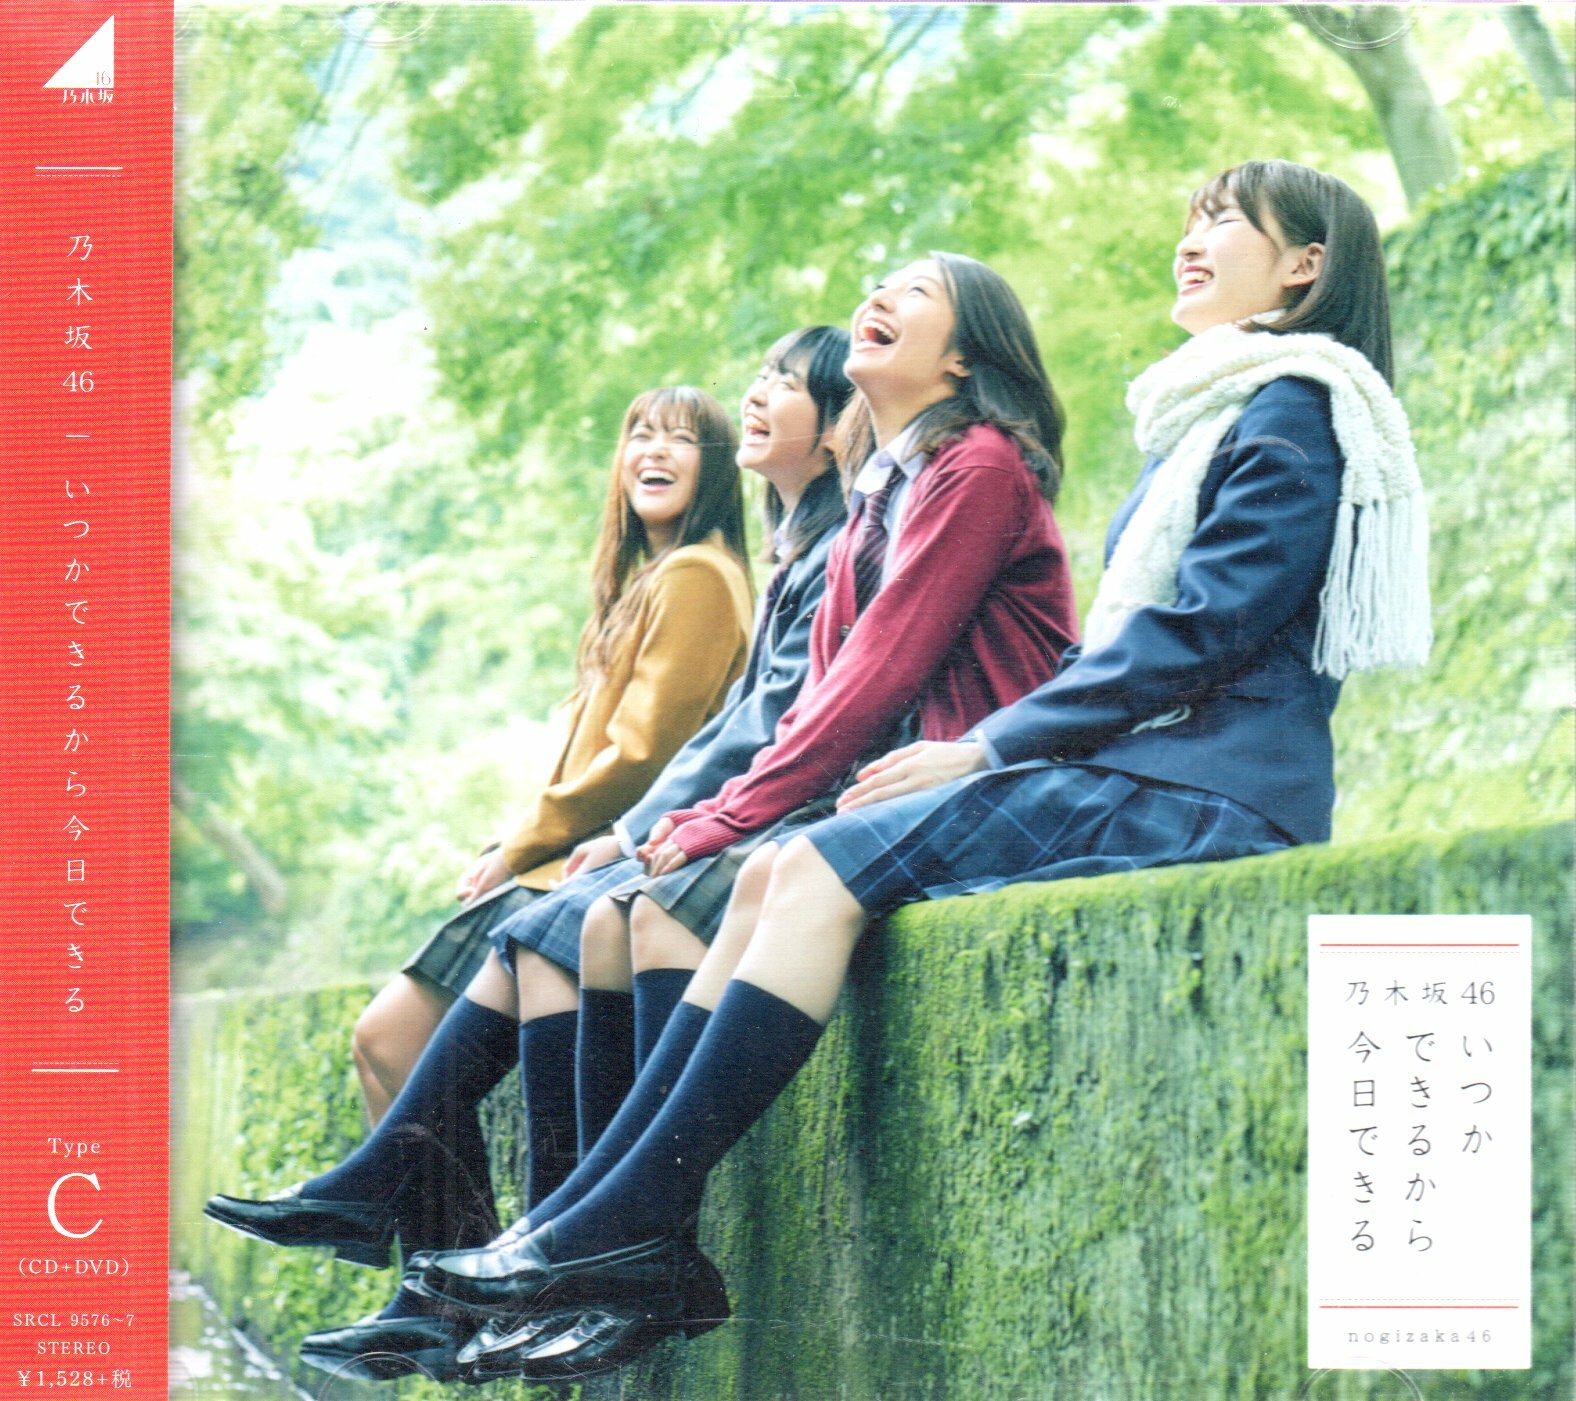 乃木坂46 及時行事單曲日版初回C盤CD+DVD 附側標589900006055